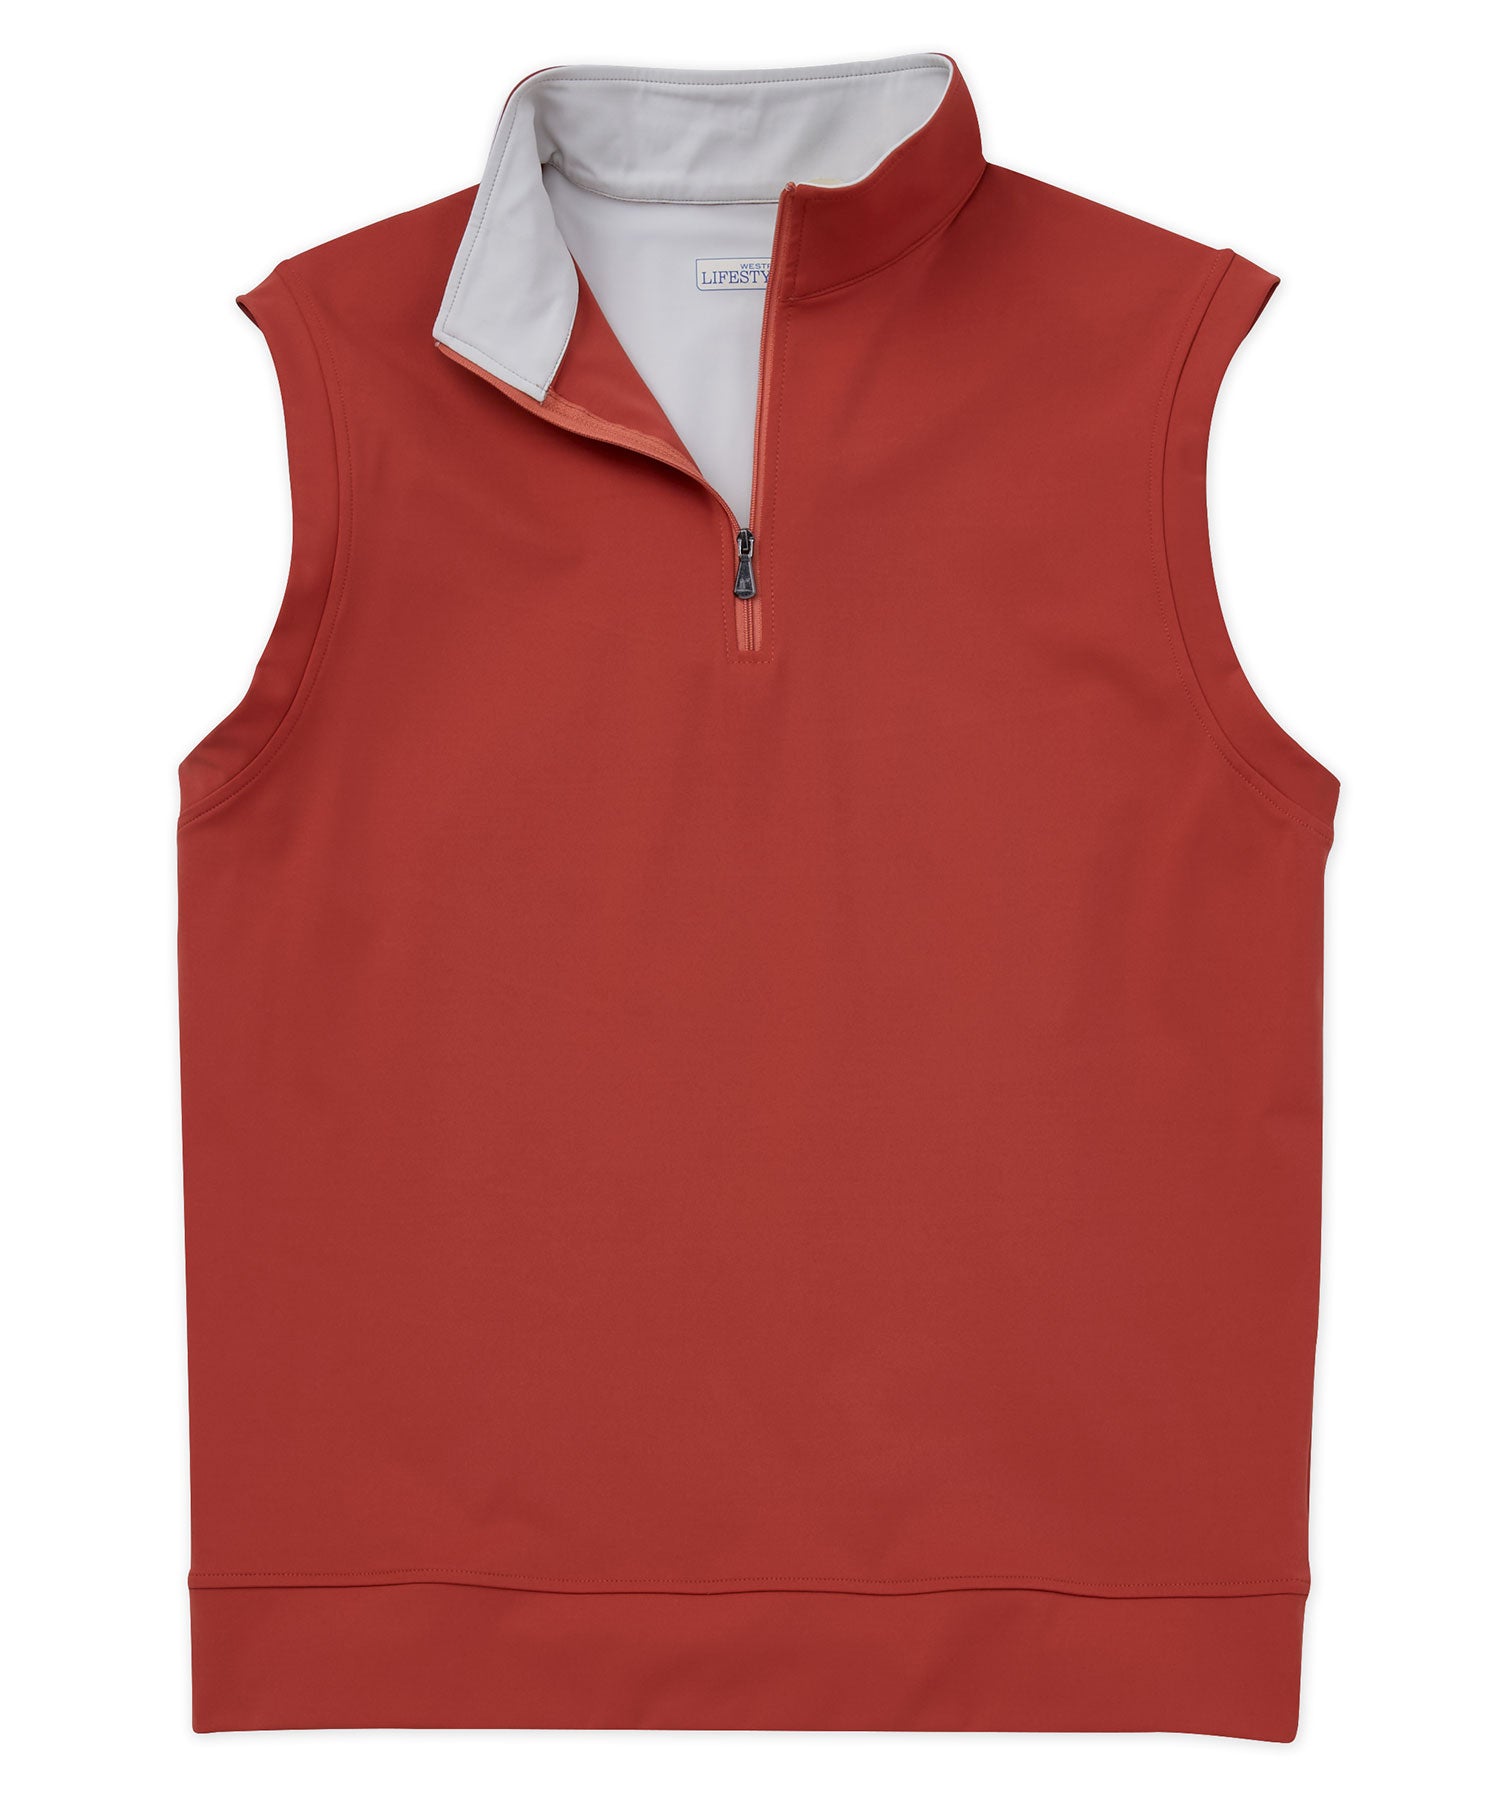 Buy Red Tape Rust Solid Cotton Linen Men Shirt online